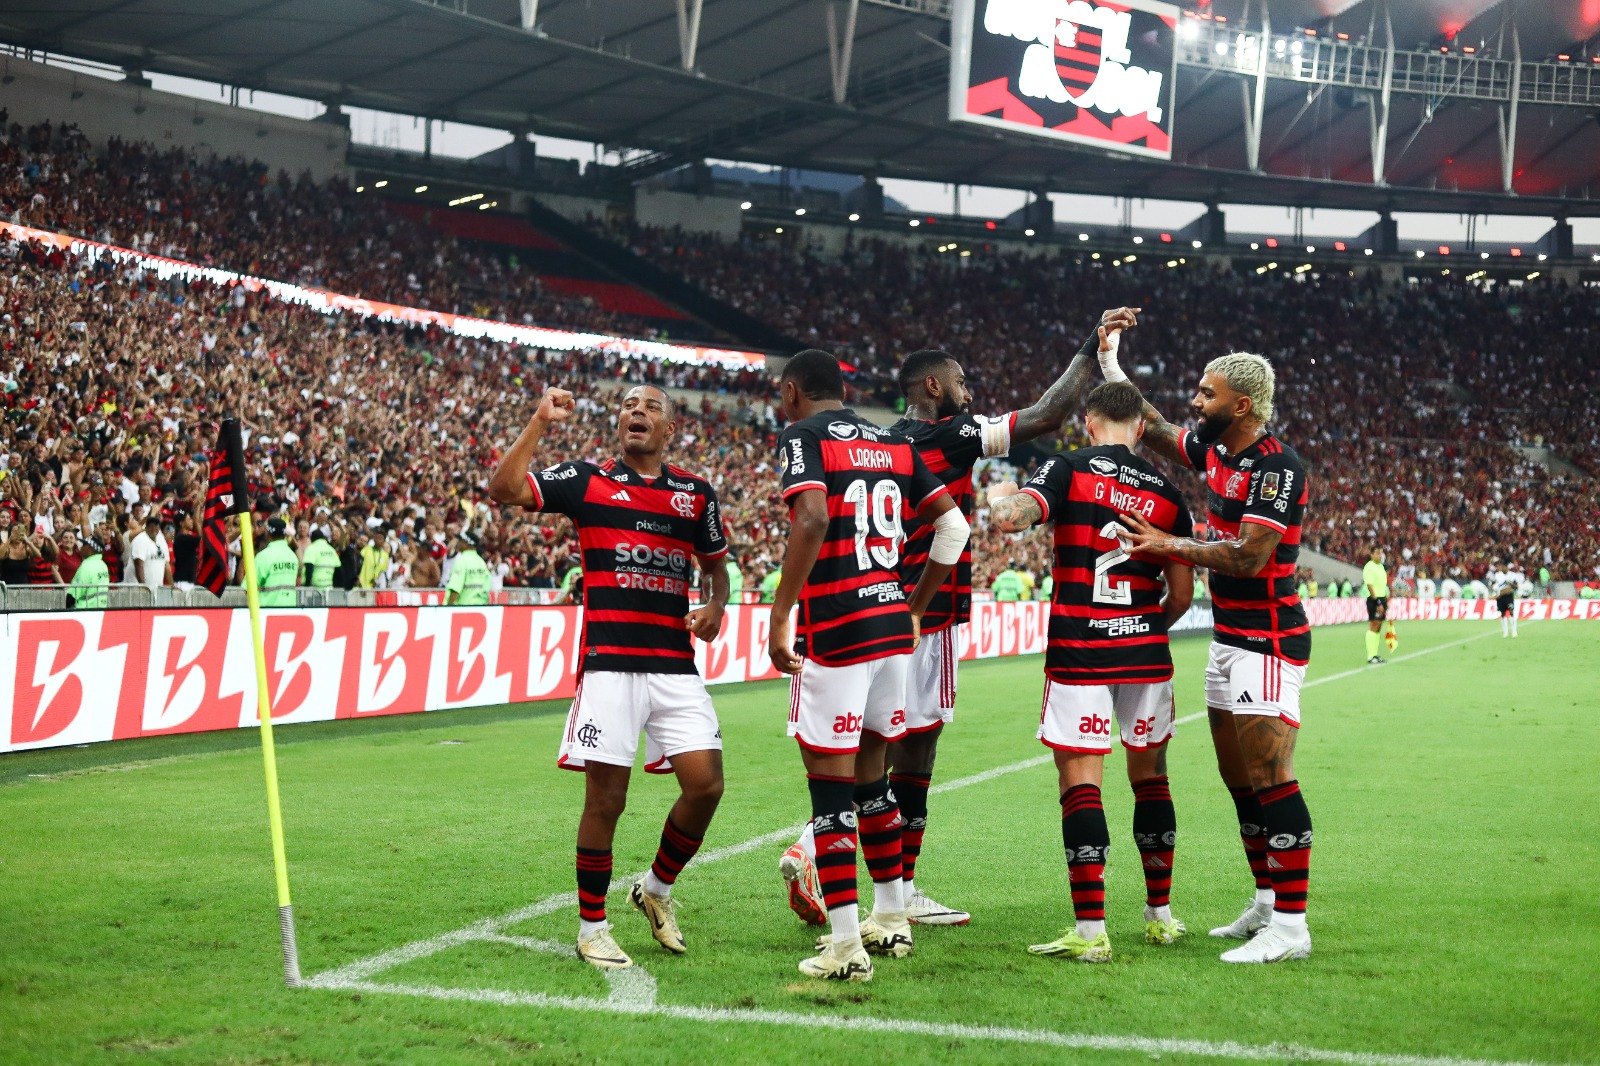 Que horas é o jogo do Flamengo contra o Cruzeiro neste domingo?